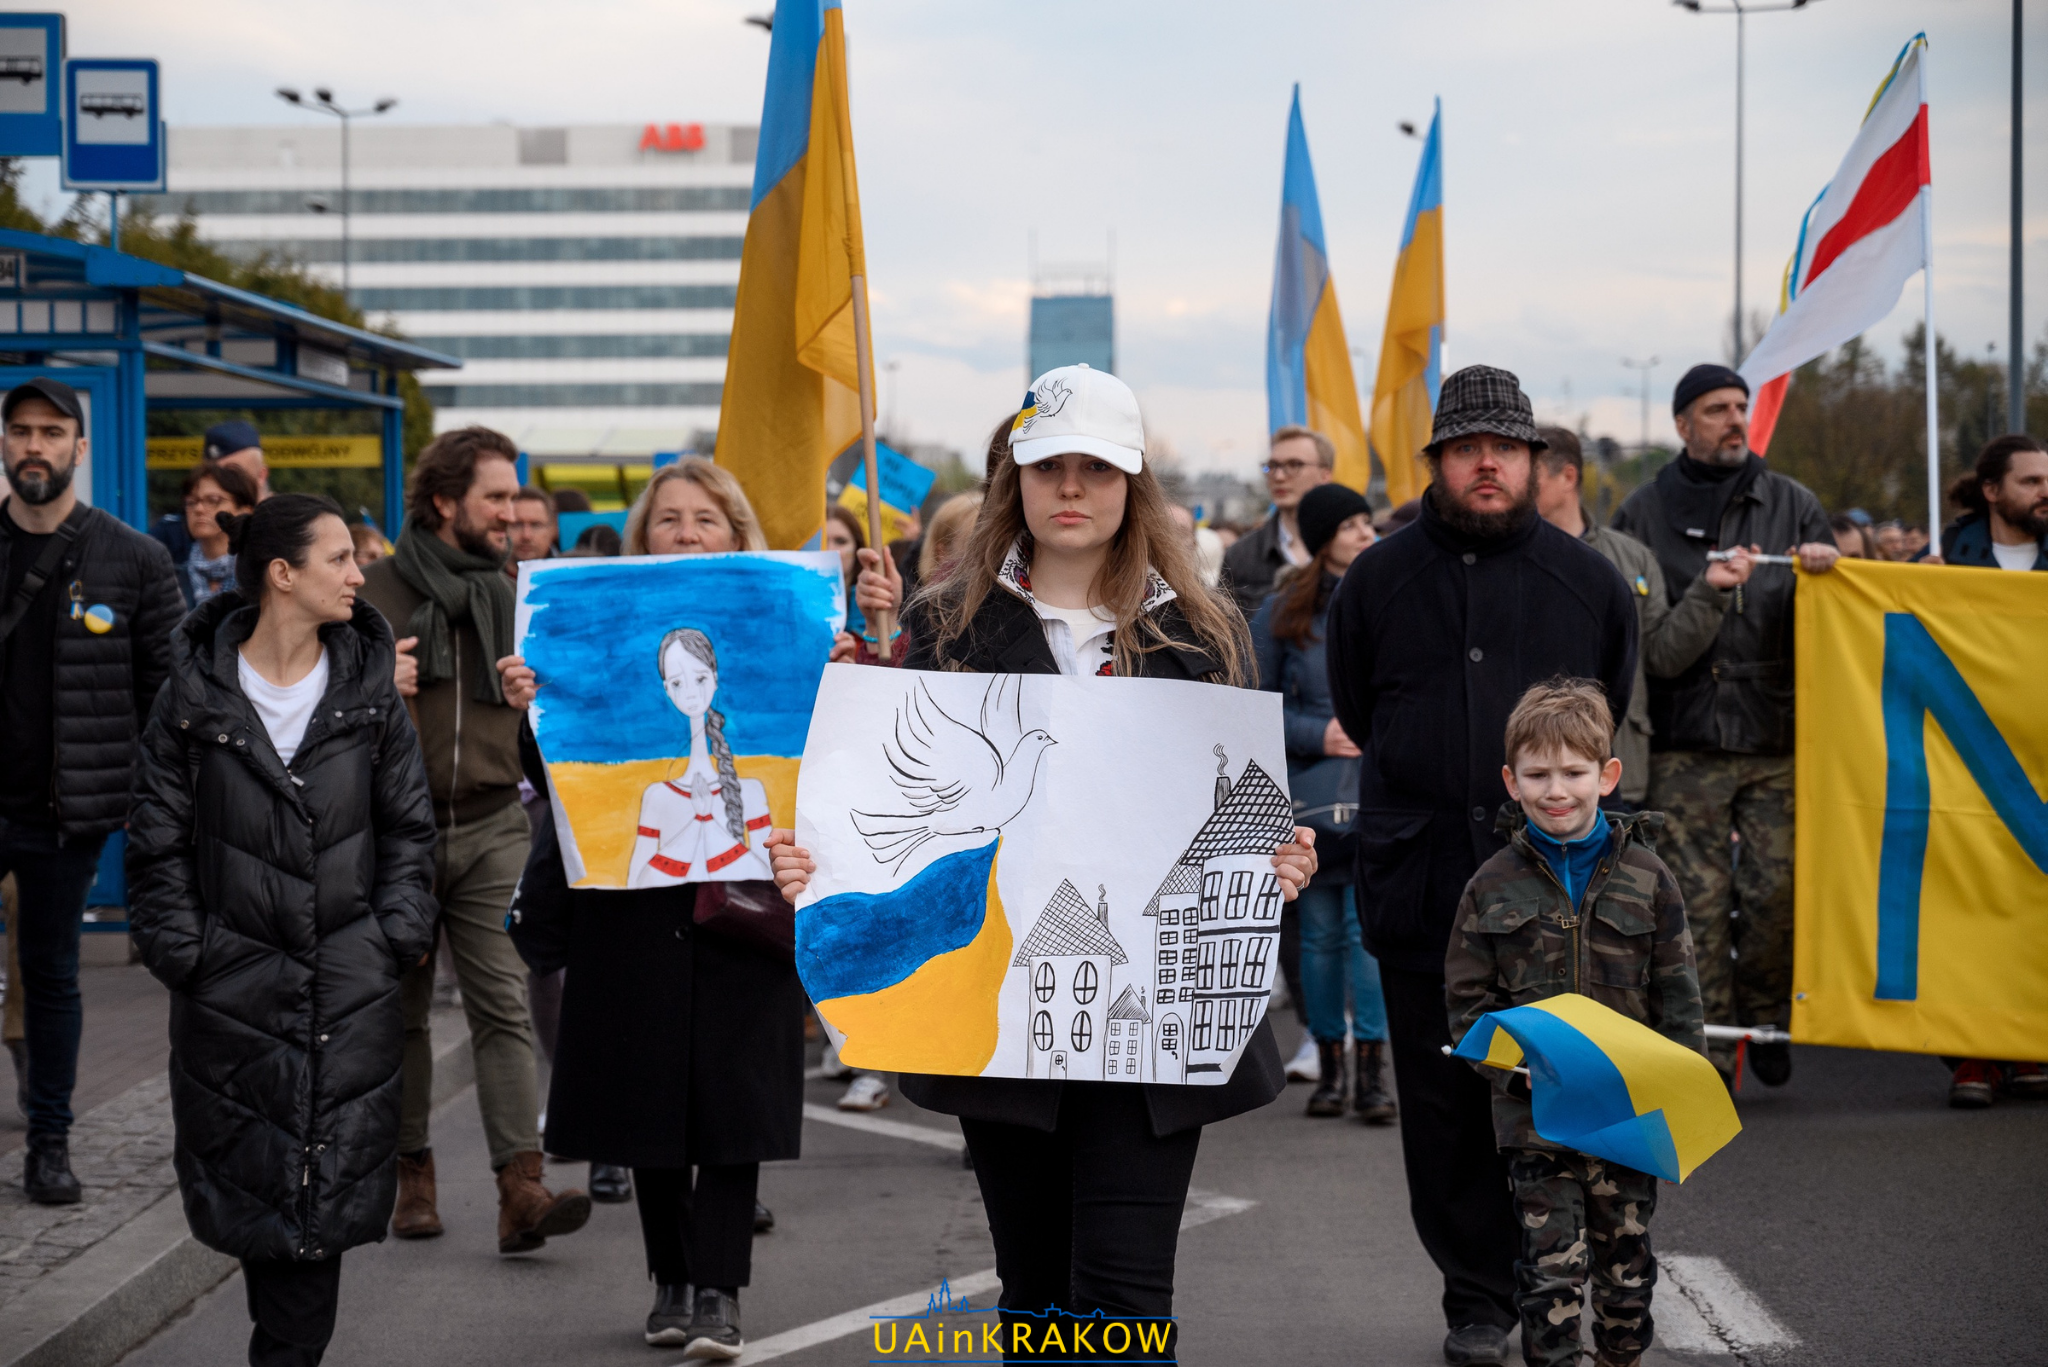 У Кракові відбувася марш солідарності з Україною  [ФОТО] 2 3